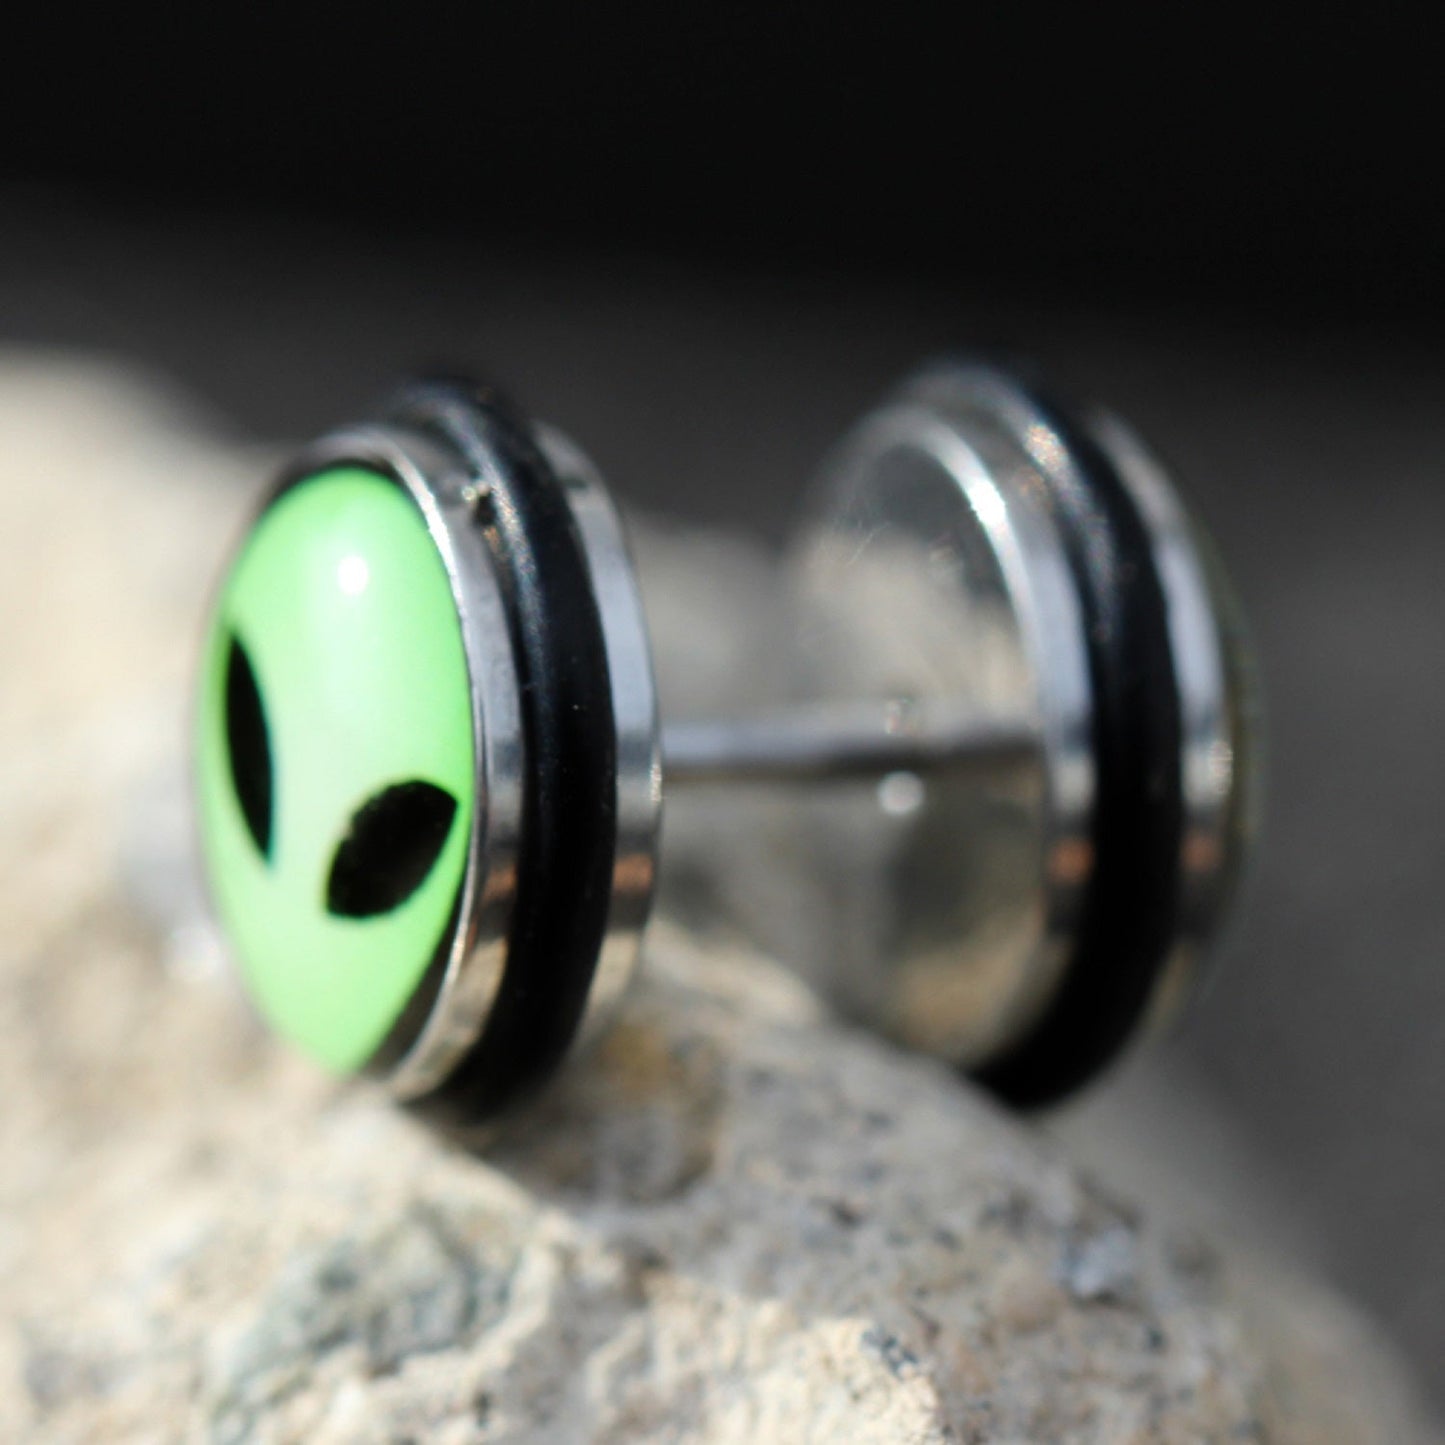 Green Alien UFO Fake Cheater Plugs Earrings - Stainless Steel